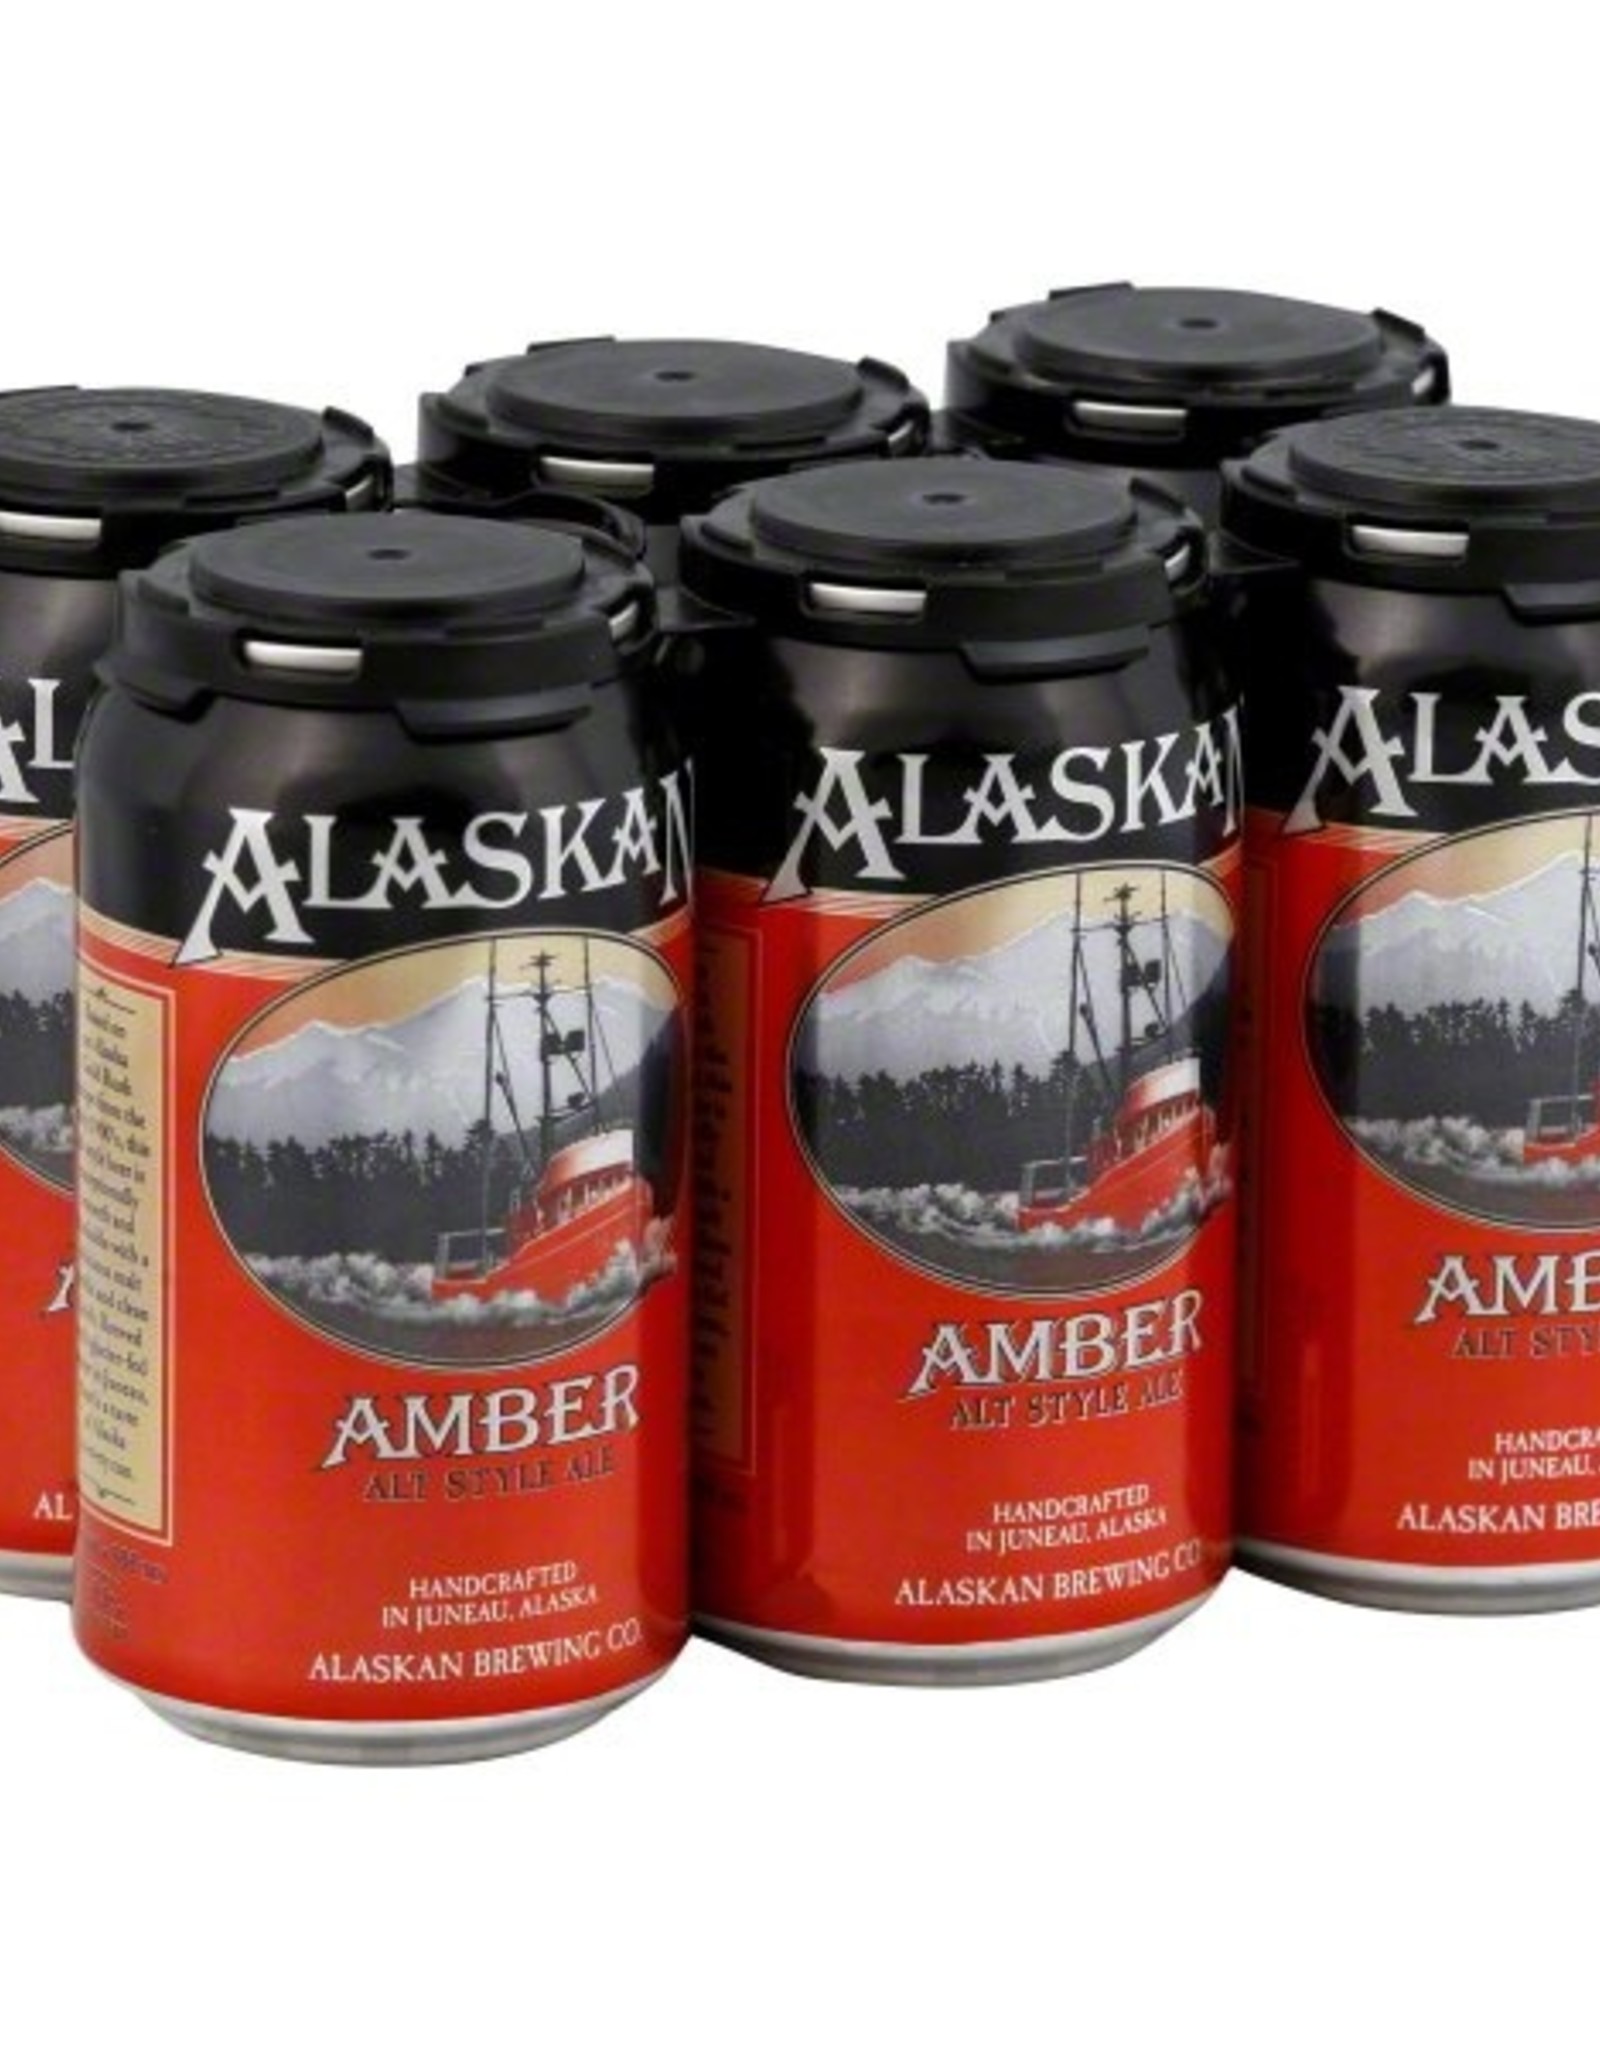 Alaskan Amber 6x12 oz cans